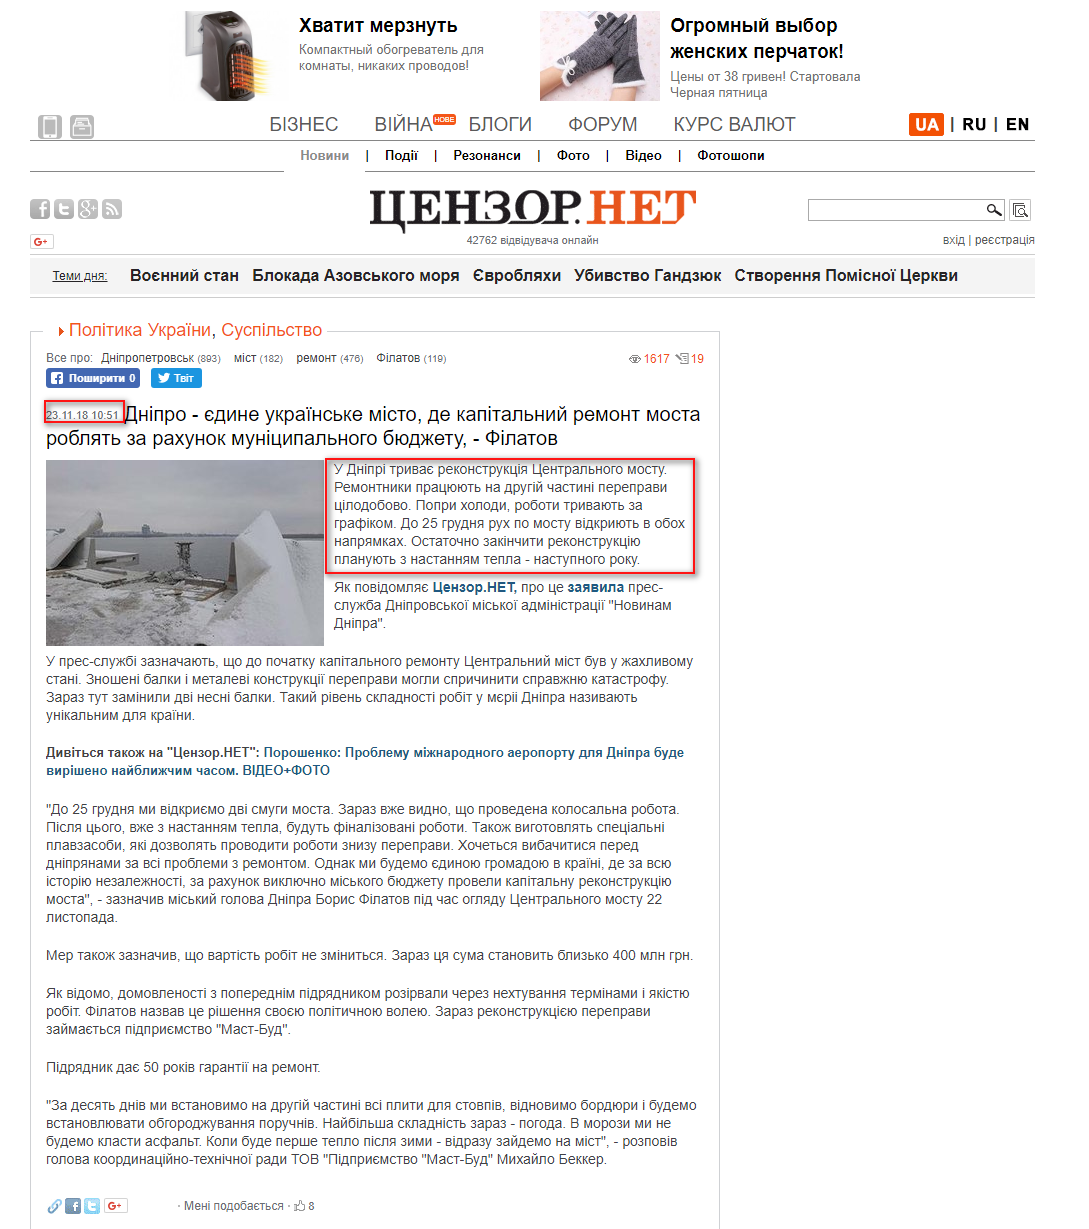 https://ua.censor.net.ua/news/3098508/dnipro_yedyne_ukrayinske_misto_de_kapitalnyyi_remont_mosta_roblyat_za_rahunok_munitsypalnogo_byudjetu